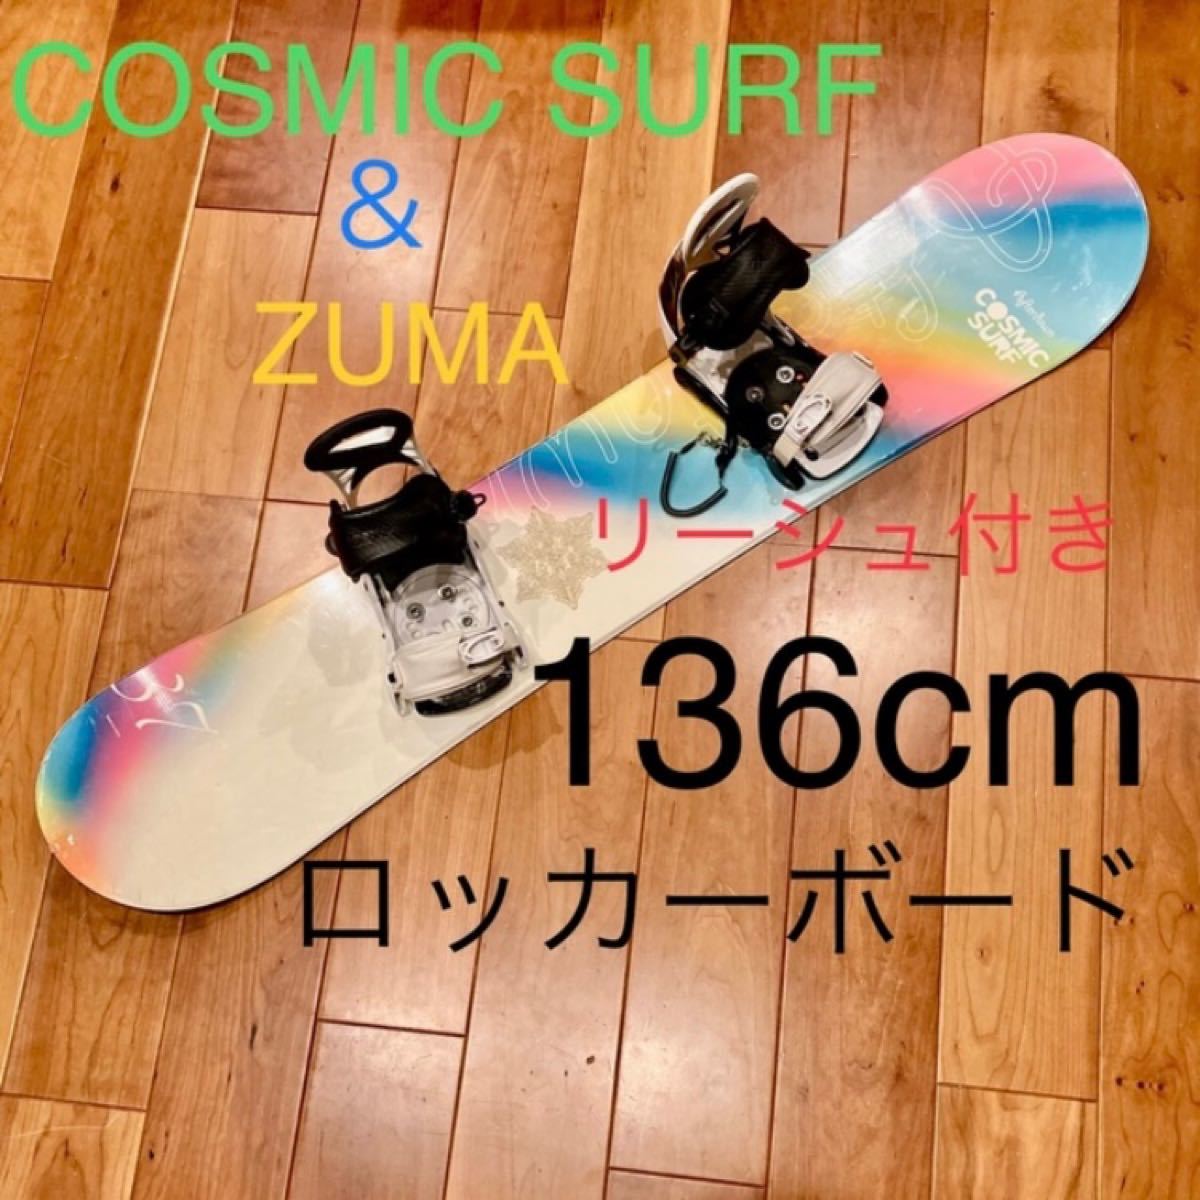 cosmic surf のボードとZUMAのビンディング リーシュコードのセット